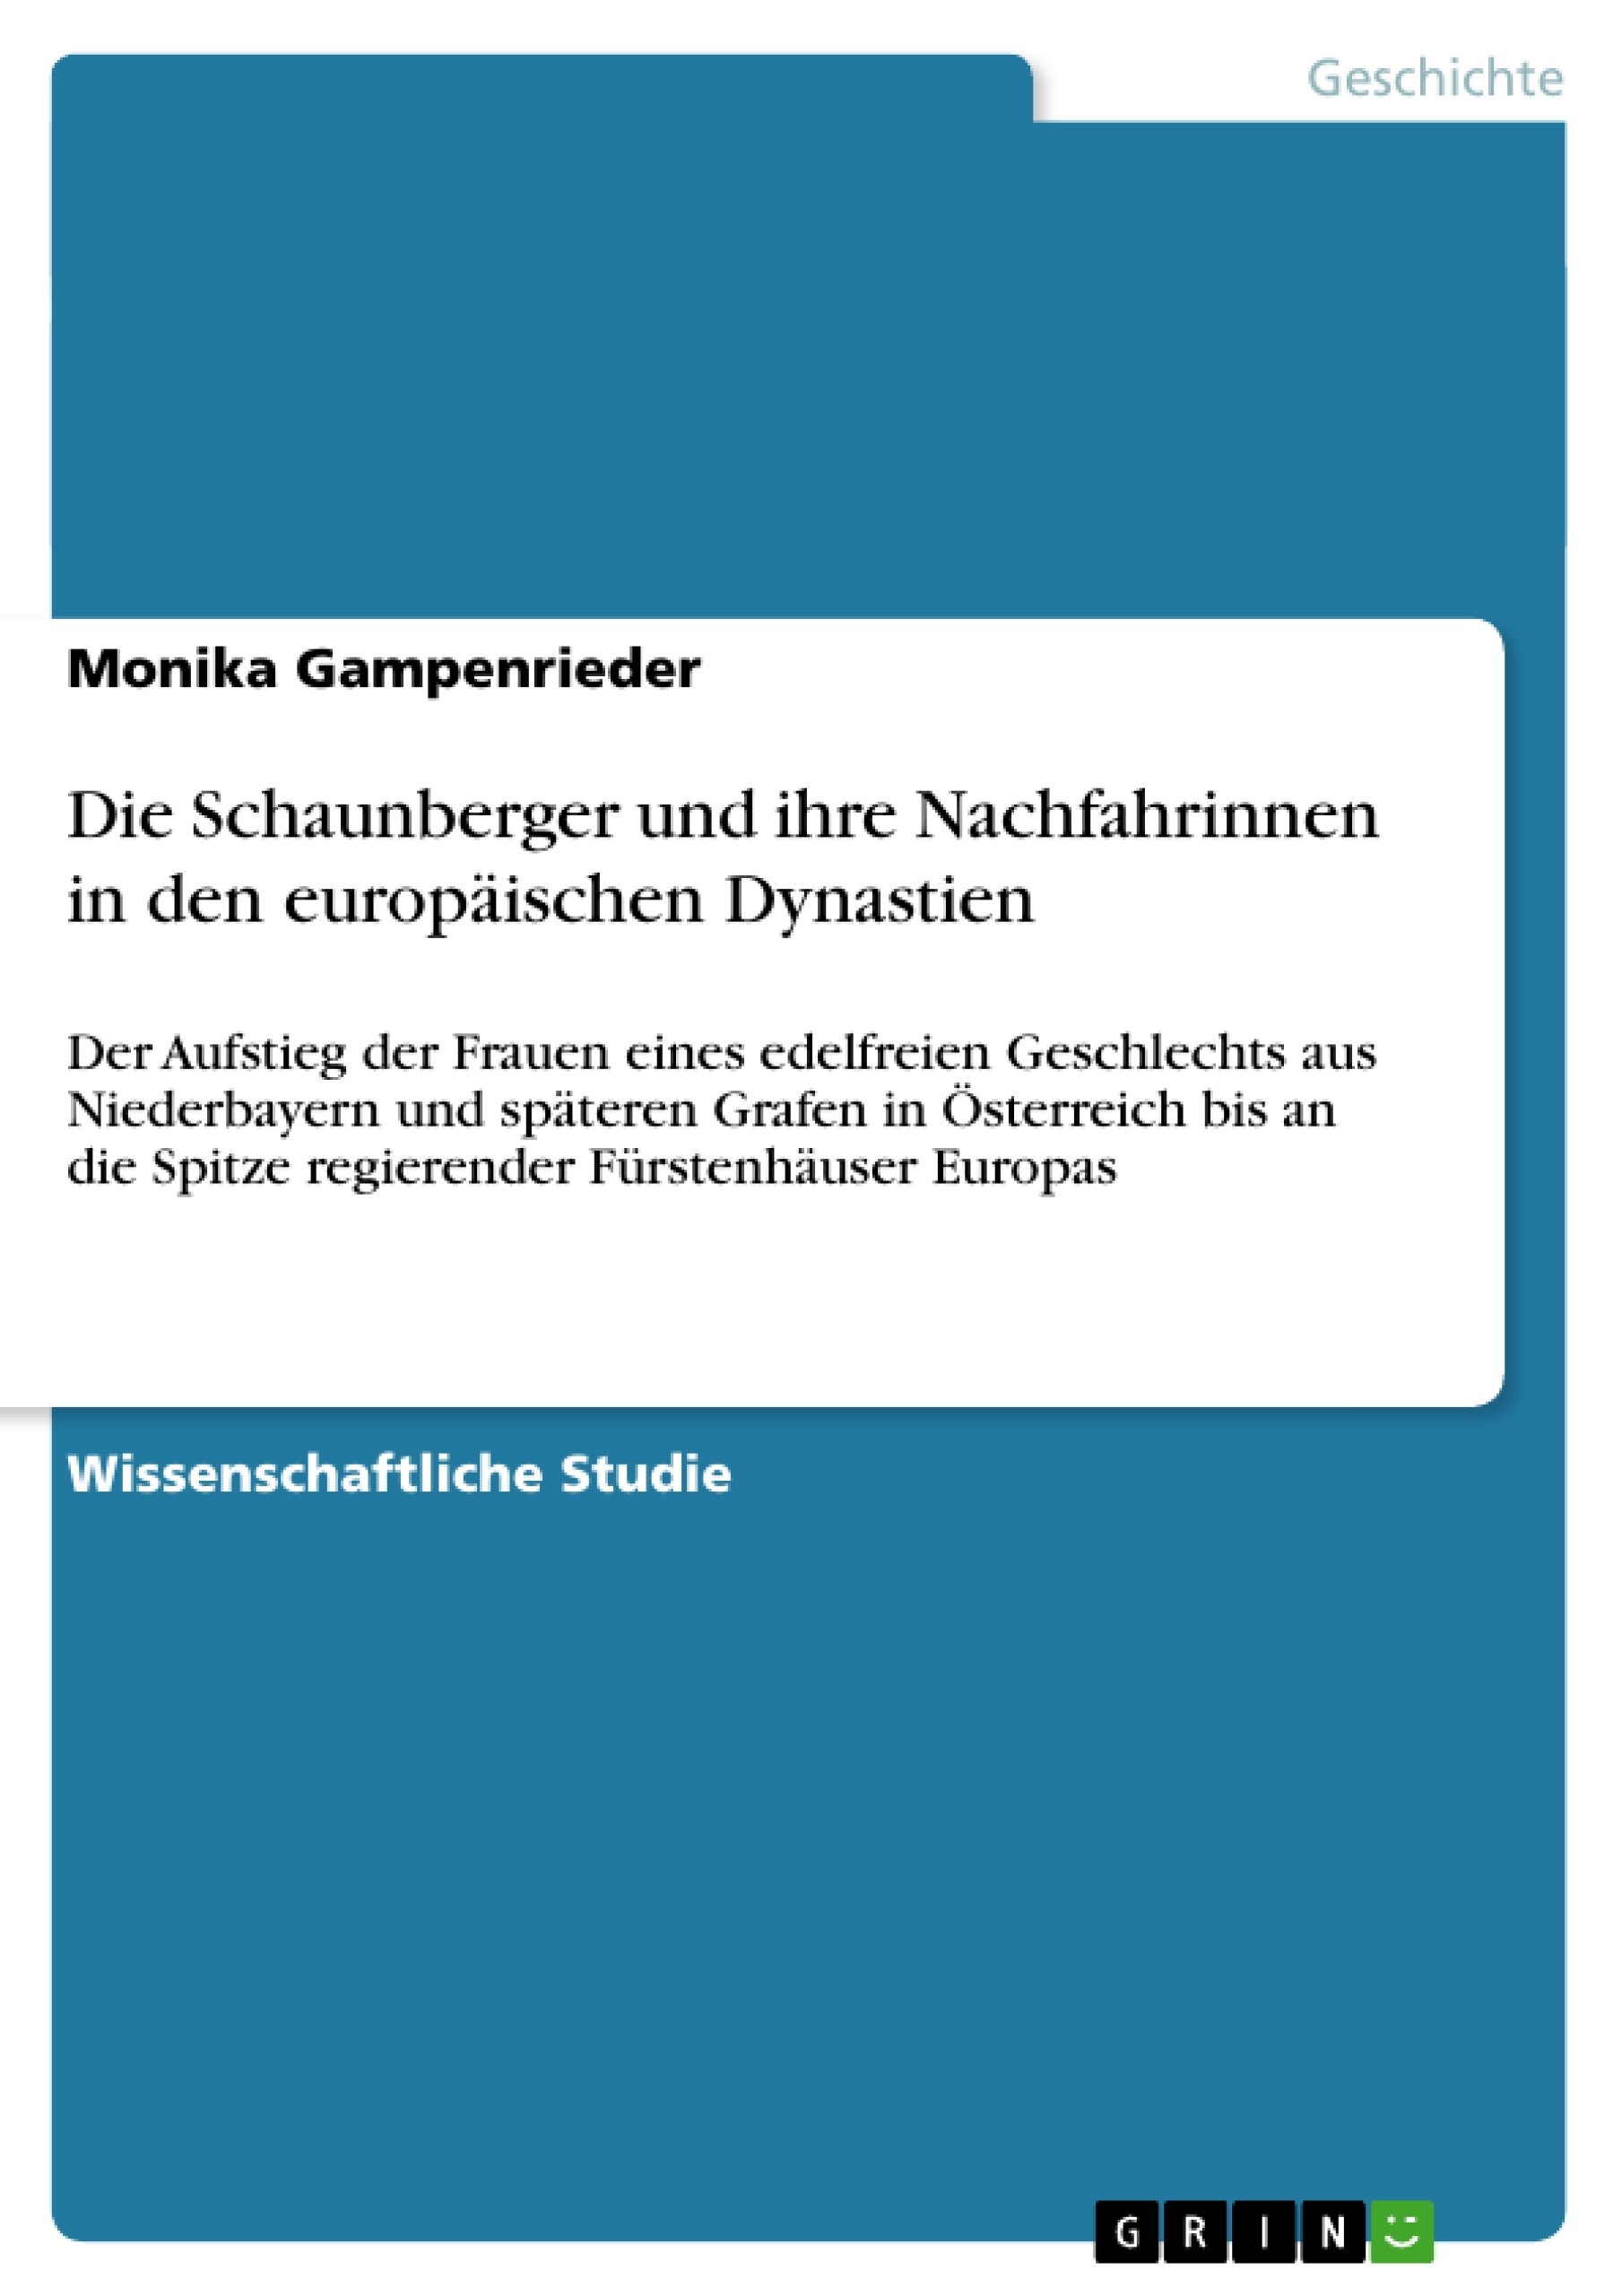 Titre: Die Schaunberger und ihre Nachfahrinnen in den europäischen Dynastien